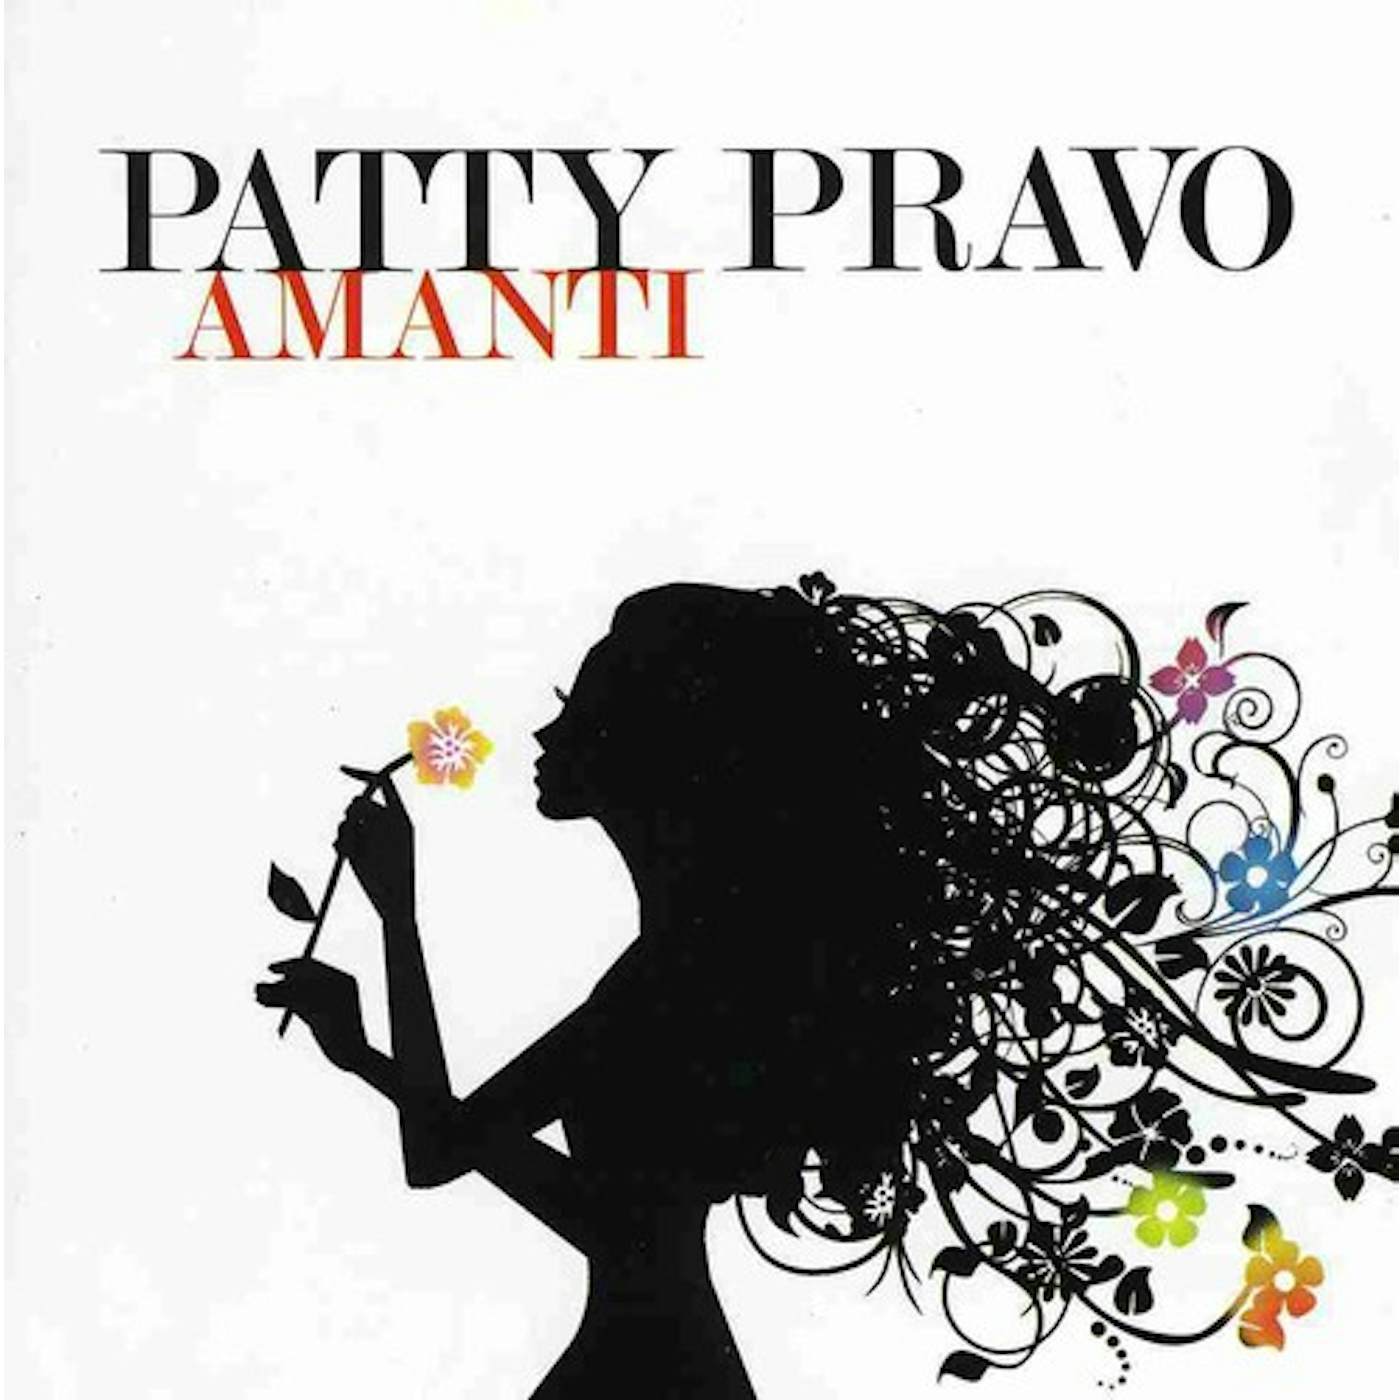 Patty Pravo AMANTI CD